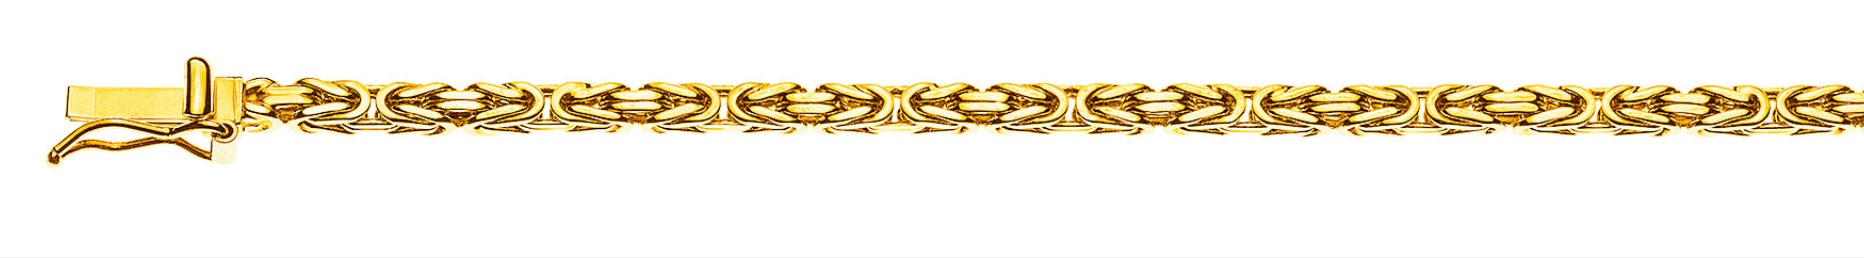 AURONOS Prestige Collier en or jaune 18K chaîne royale 55cm 2.5mm